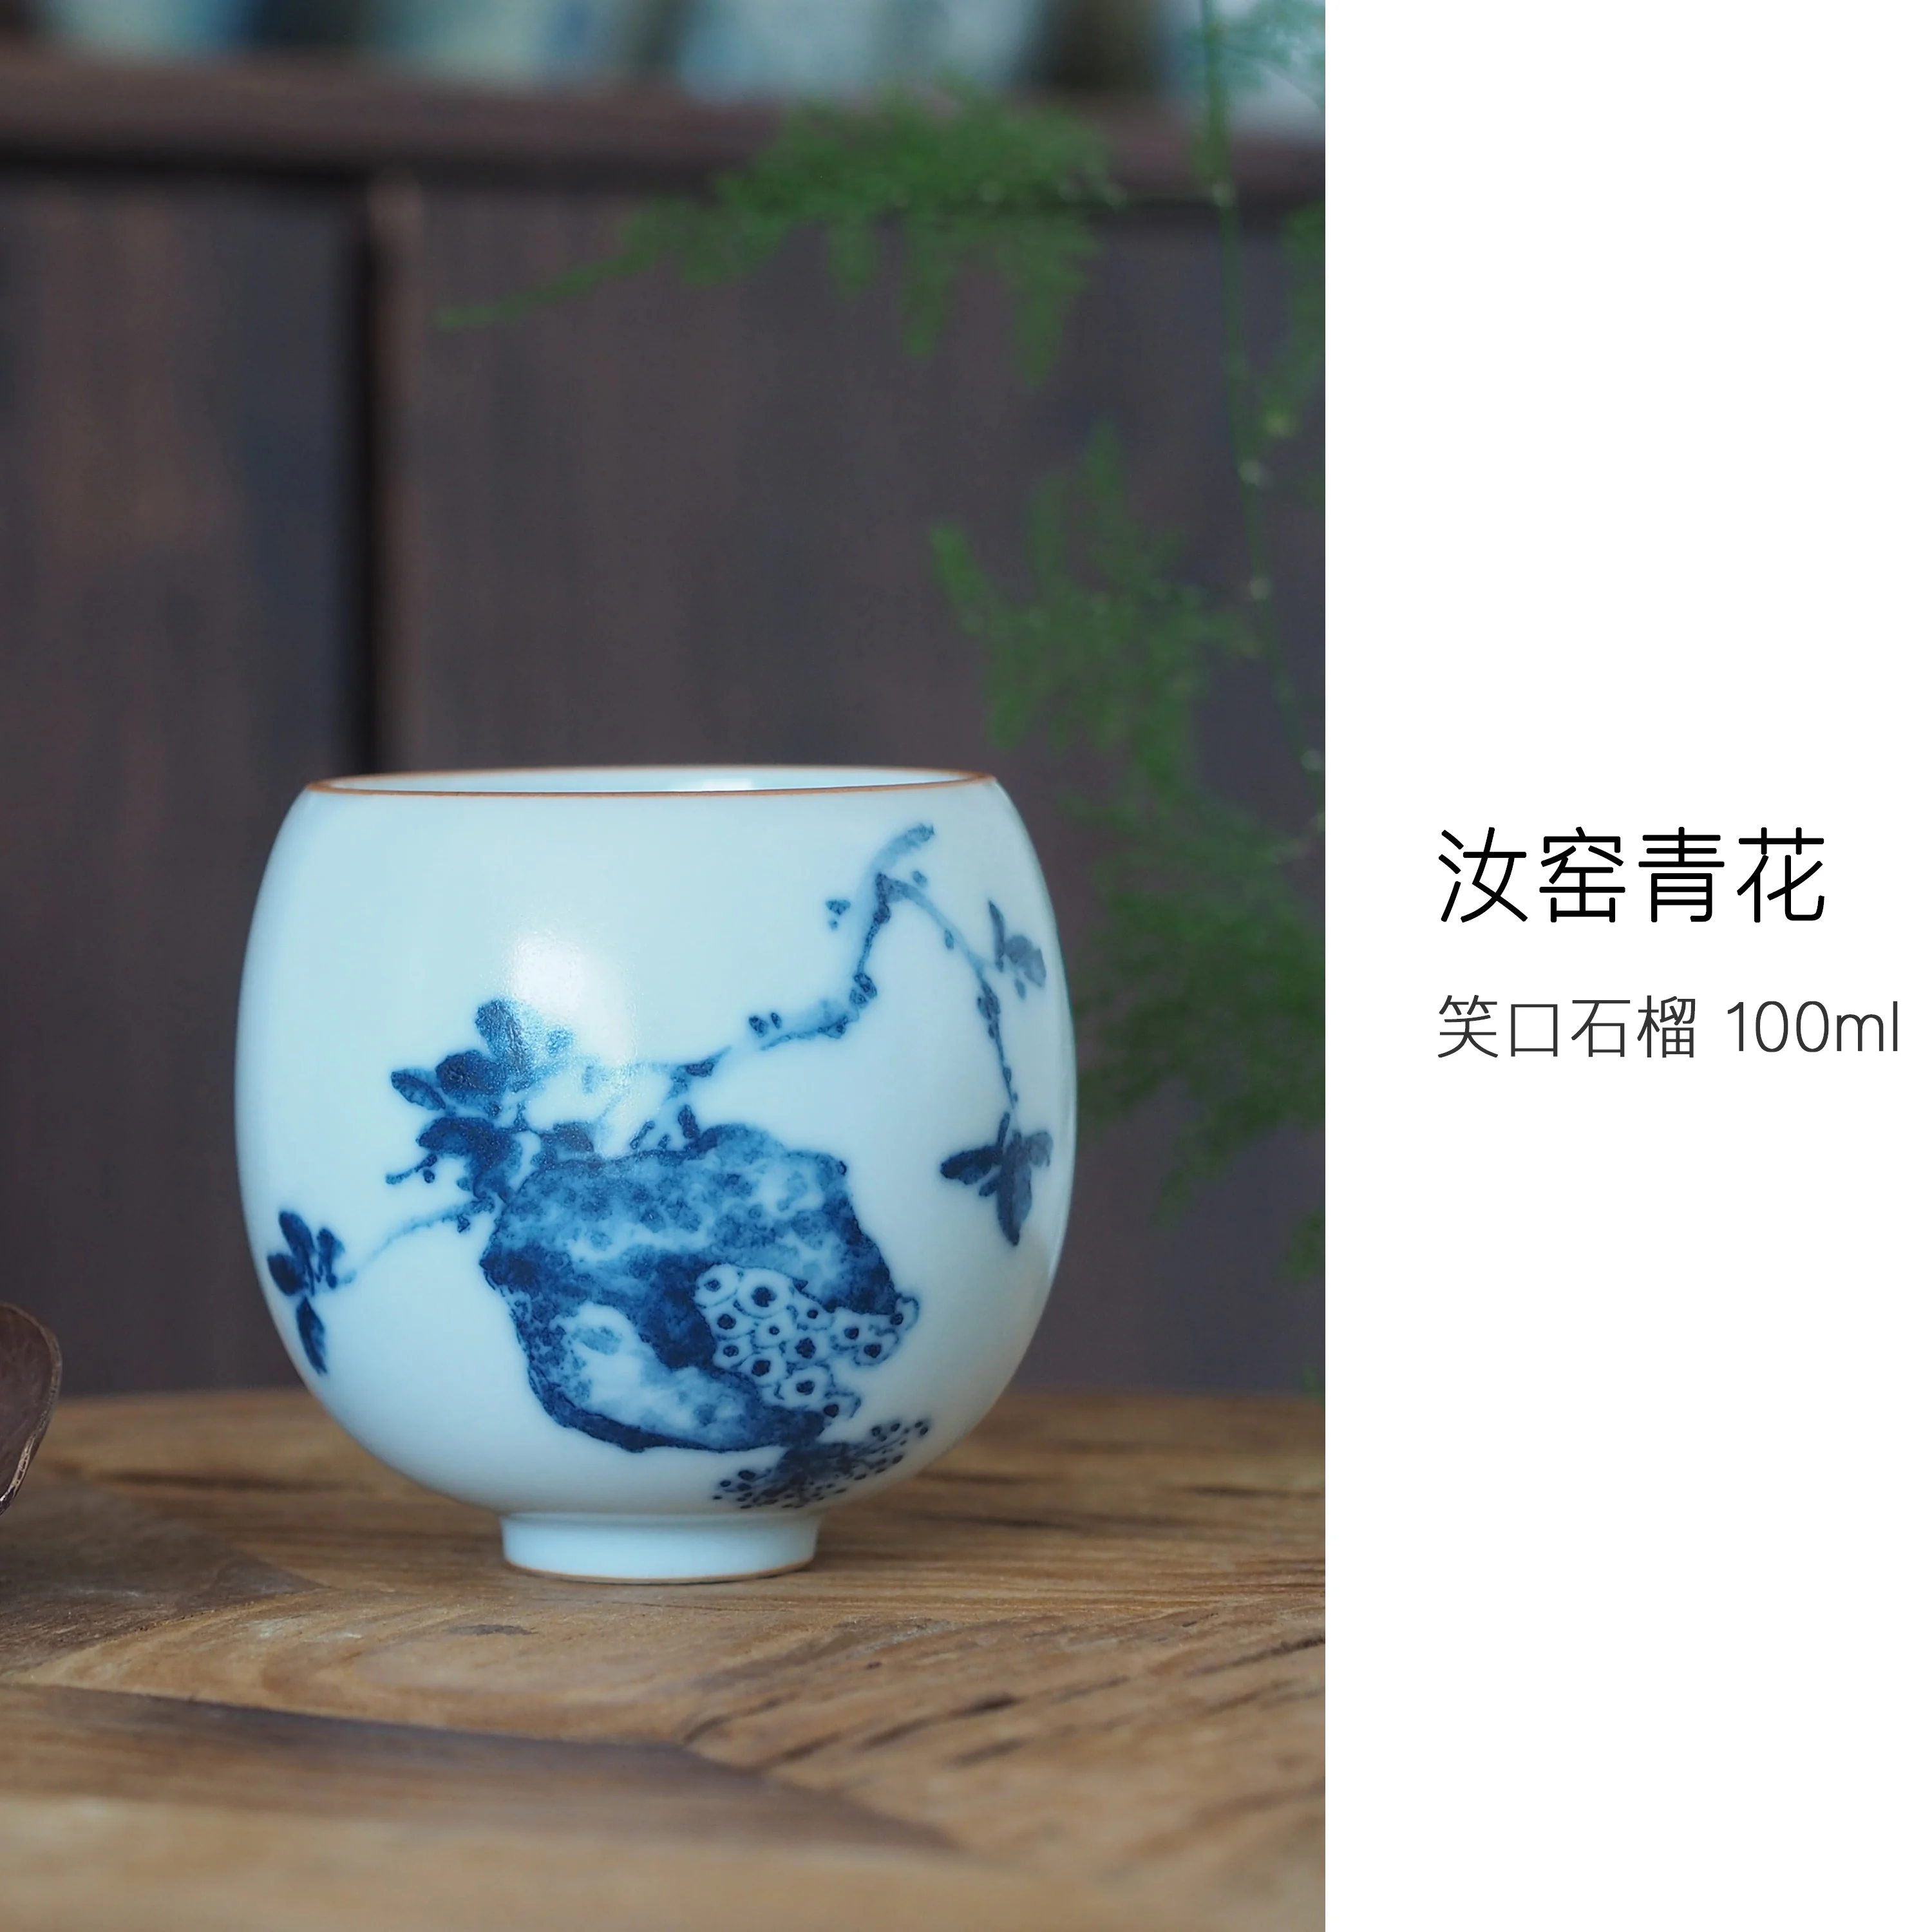 

Ruyao сине-белая ручная роспись Fuyu Master Jingdezhen чистая ручная работа Tianqing открытый нарезной Питательный чай чашка 100 мл